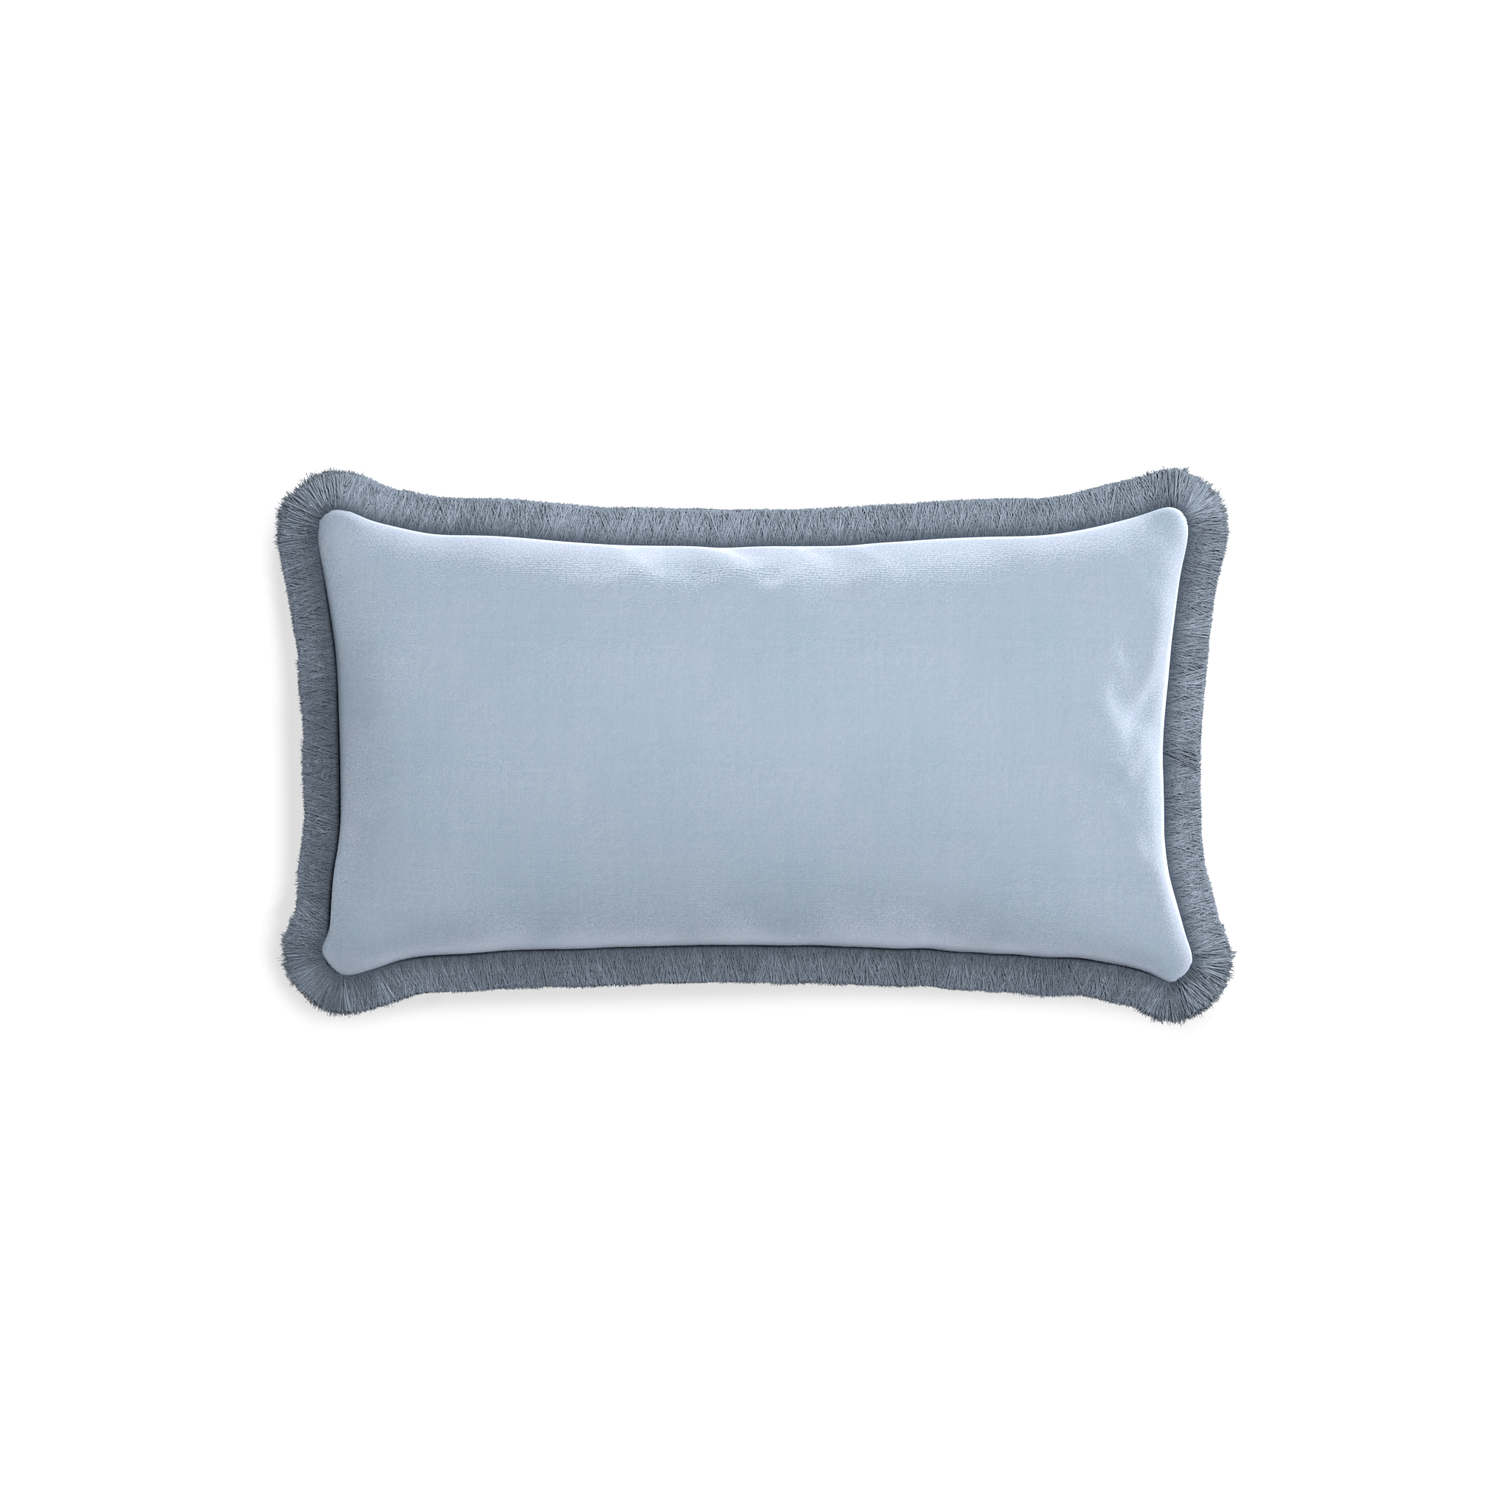 rectangle sky blue velvet pillow with sky blue fringe